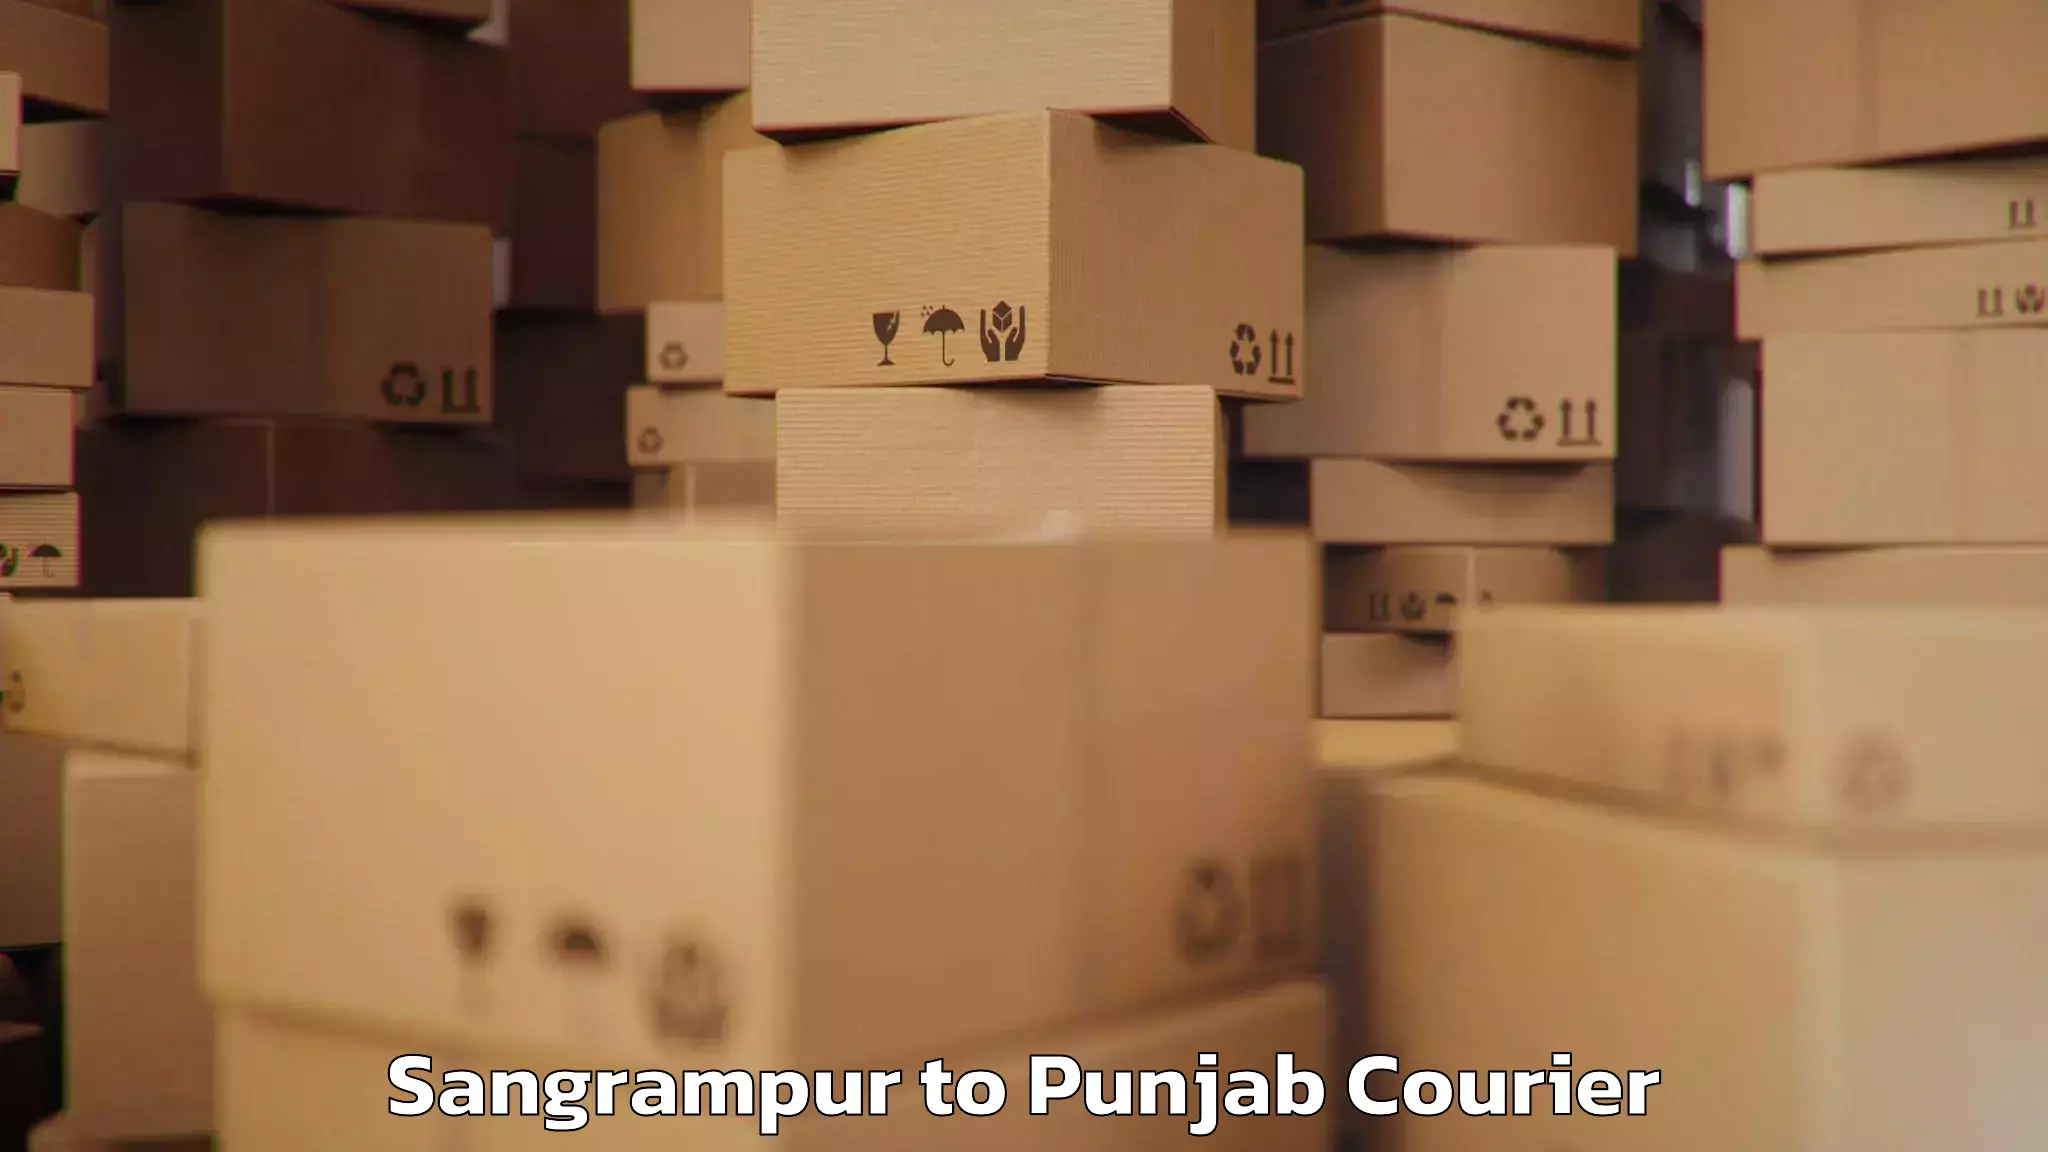 Budget-friendly baggage courier Sangrampur to Punjab